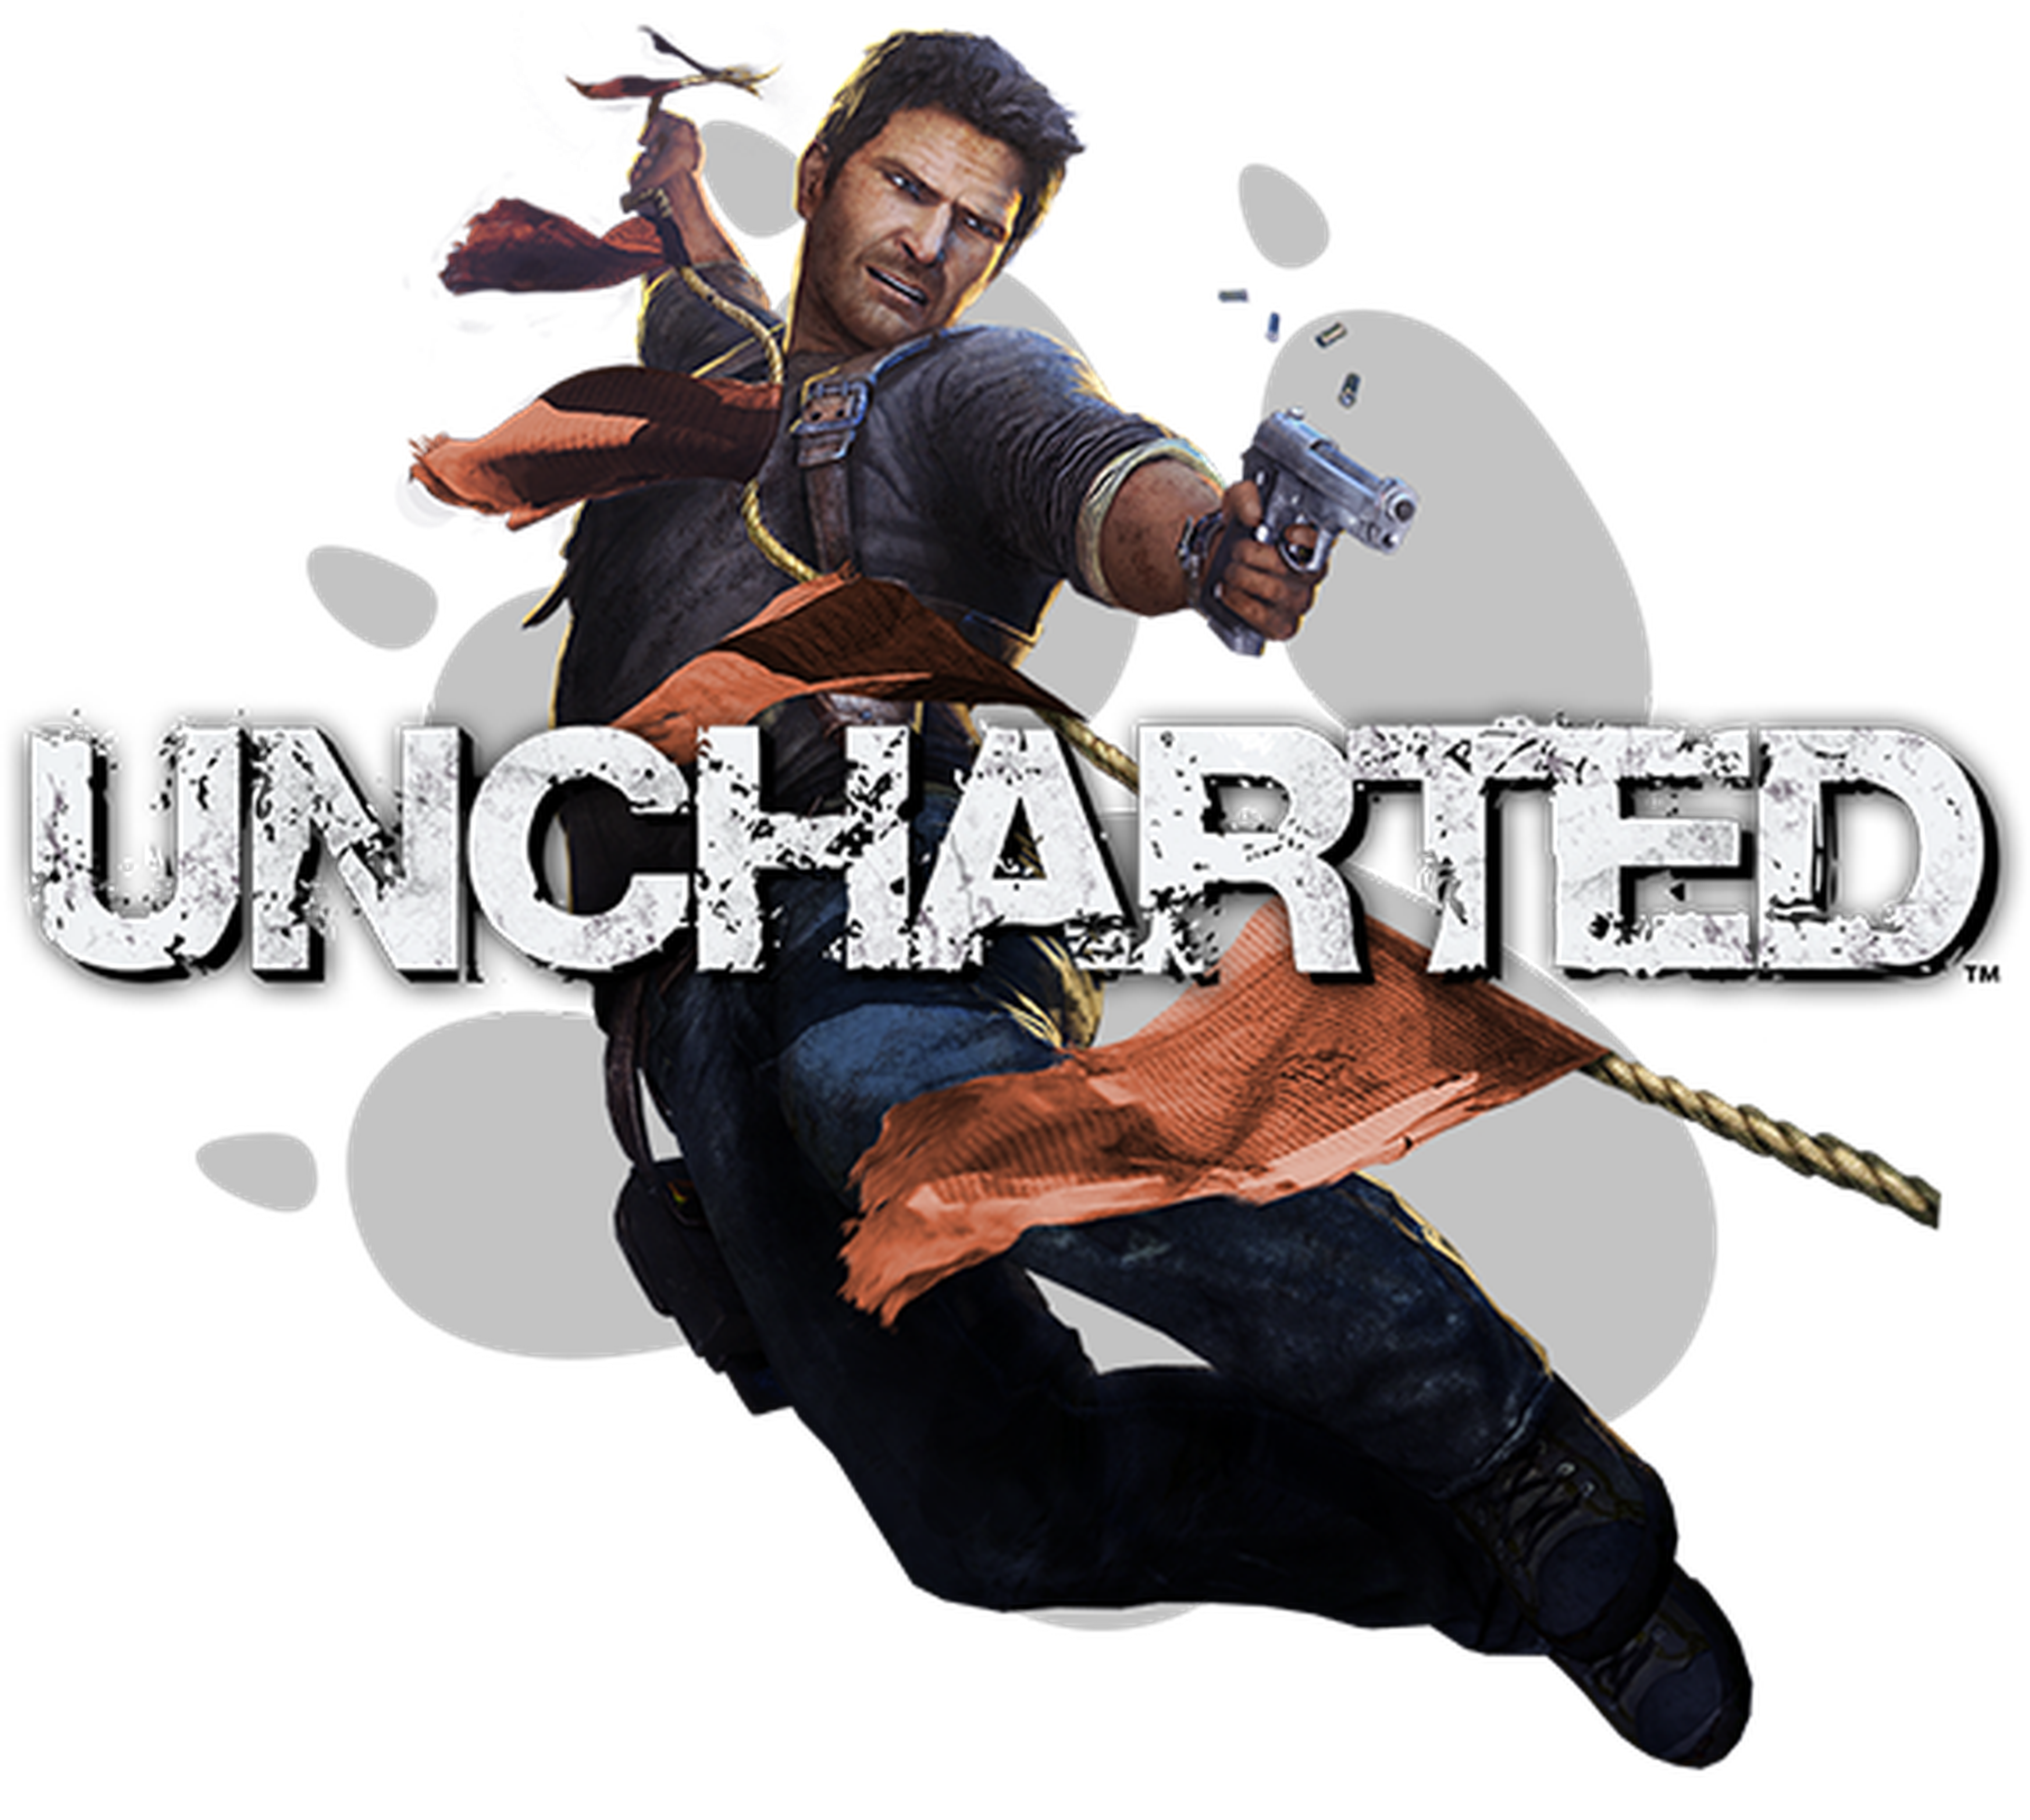 De Crash Bandicoot a Uncharted 4 - La historia de Naughty Dog